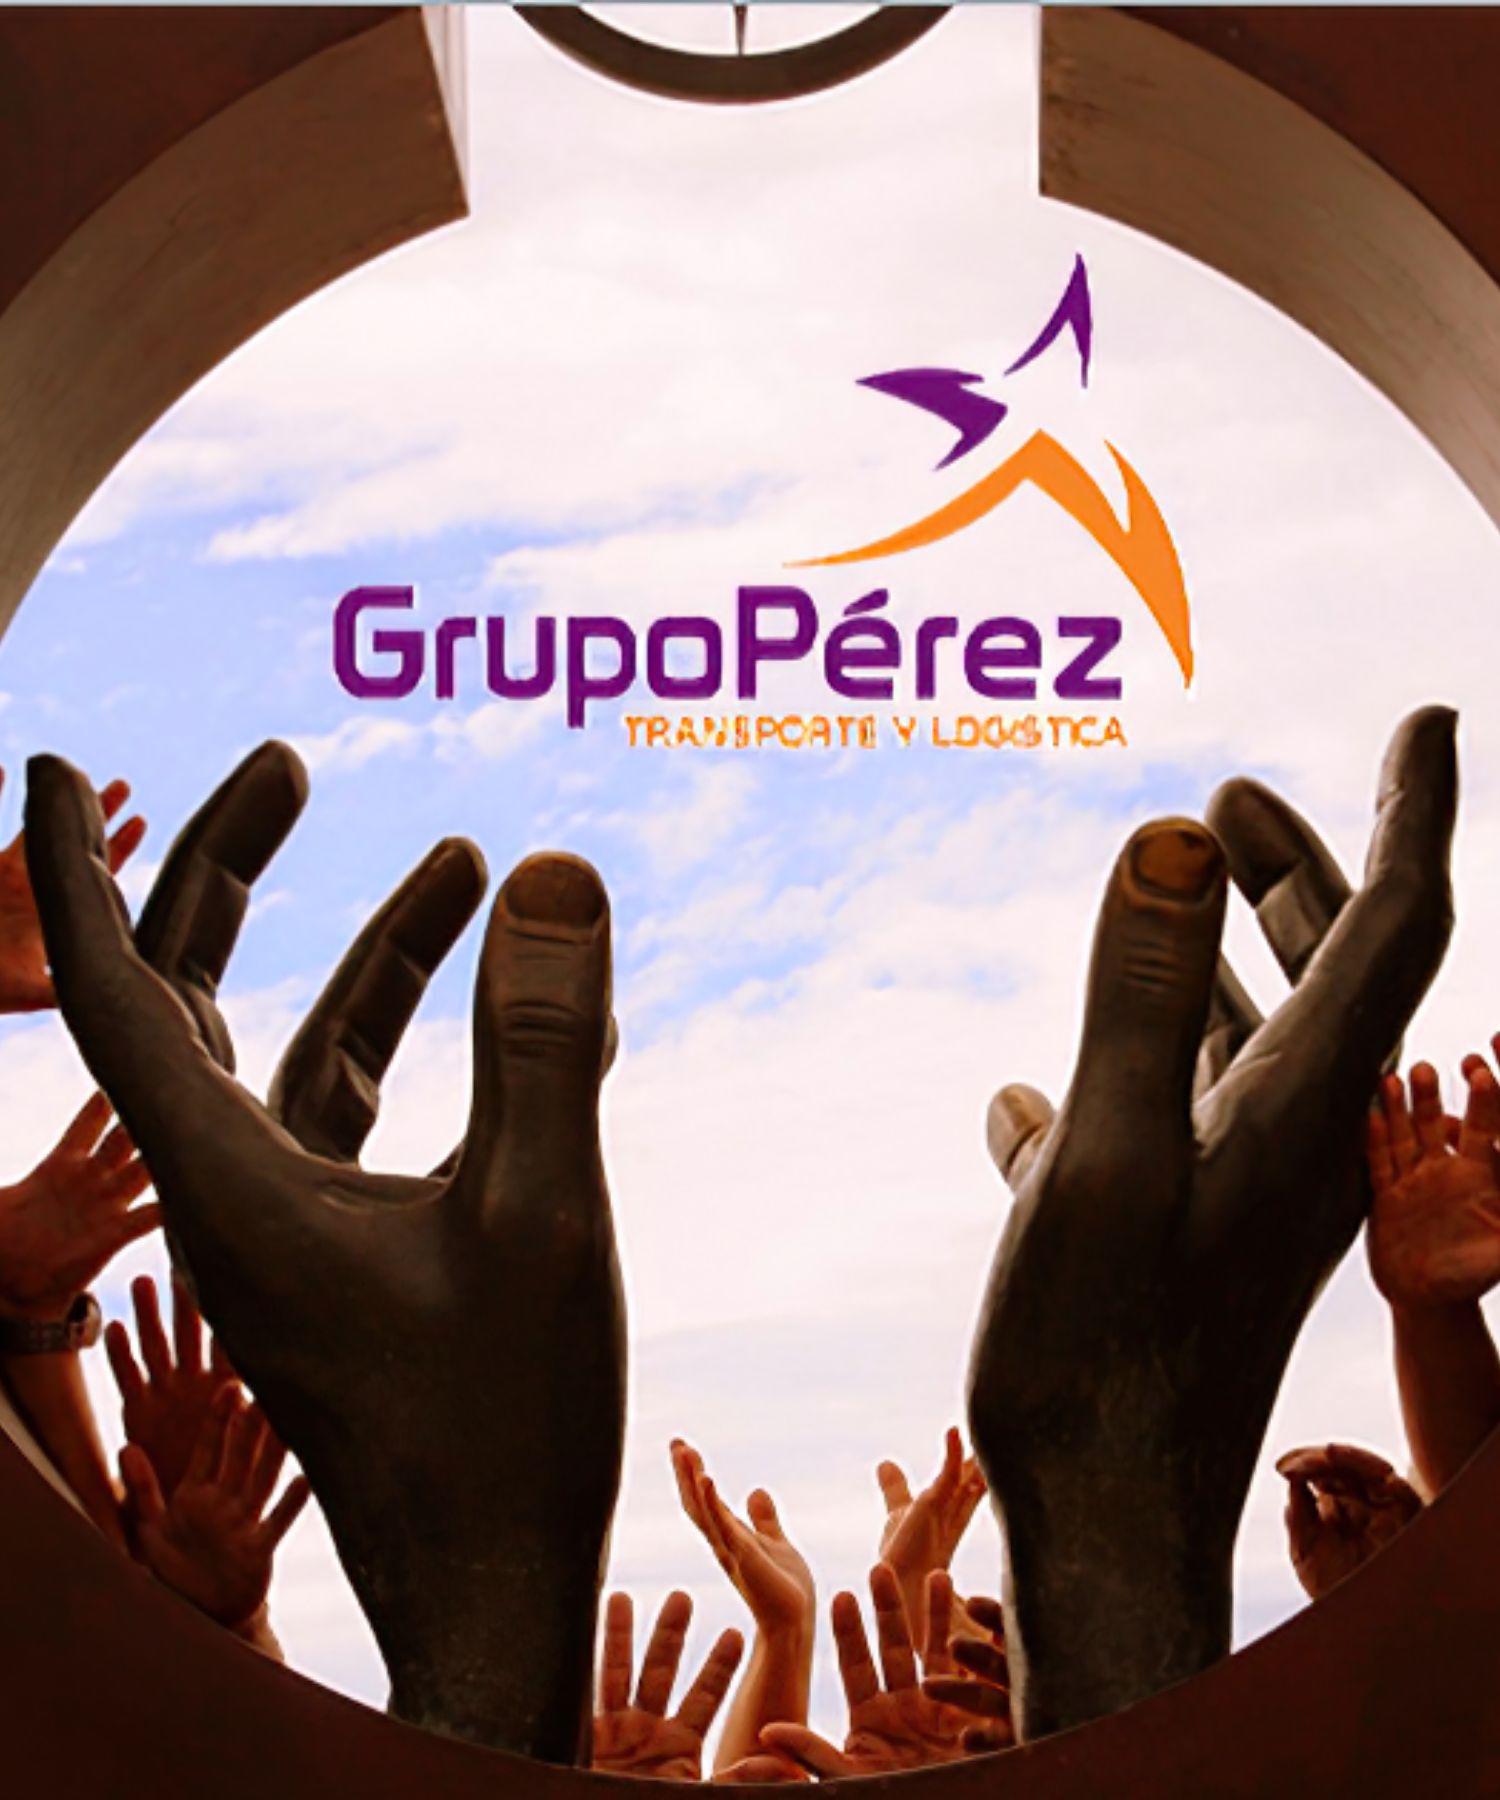 Images Transportes Grupo Pérez